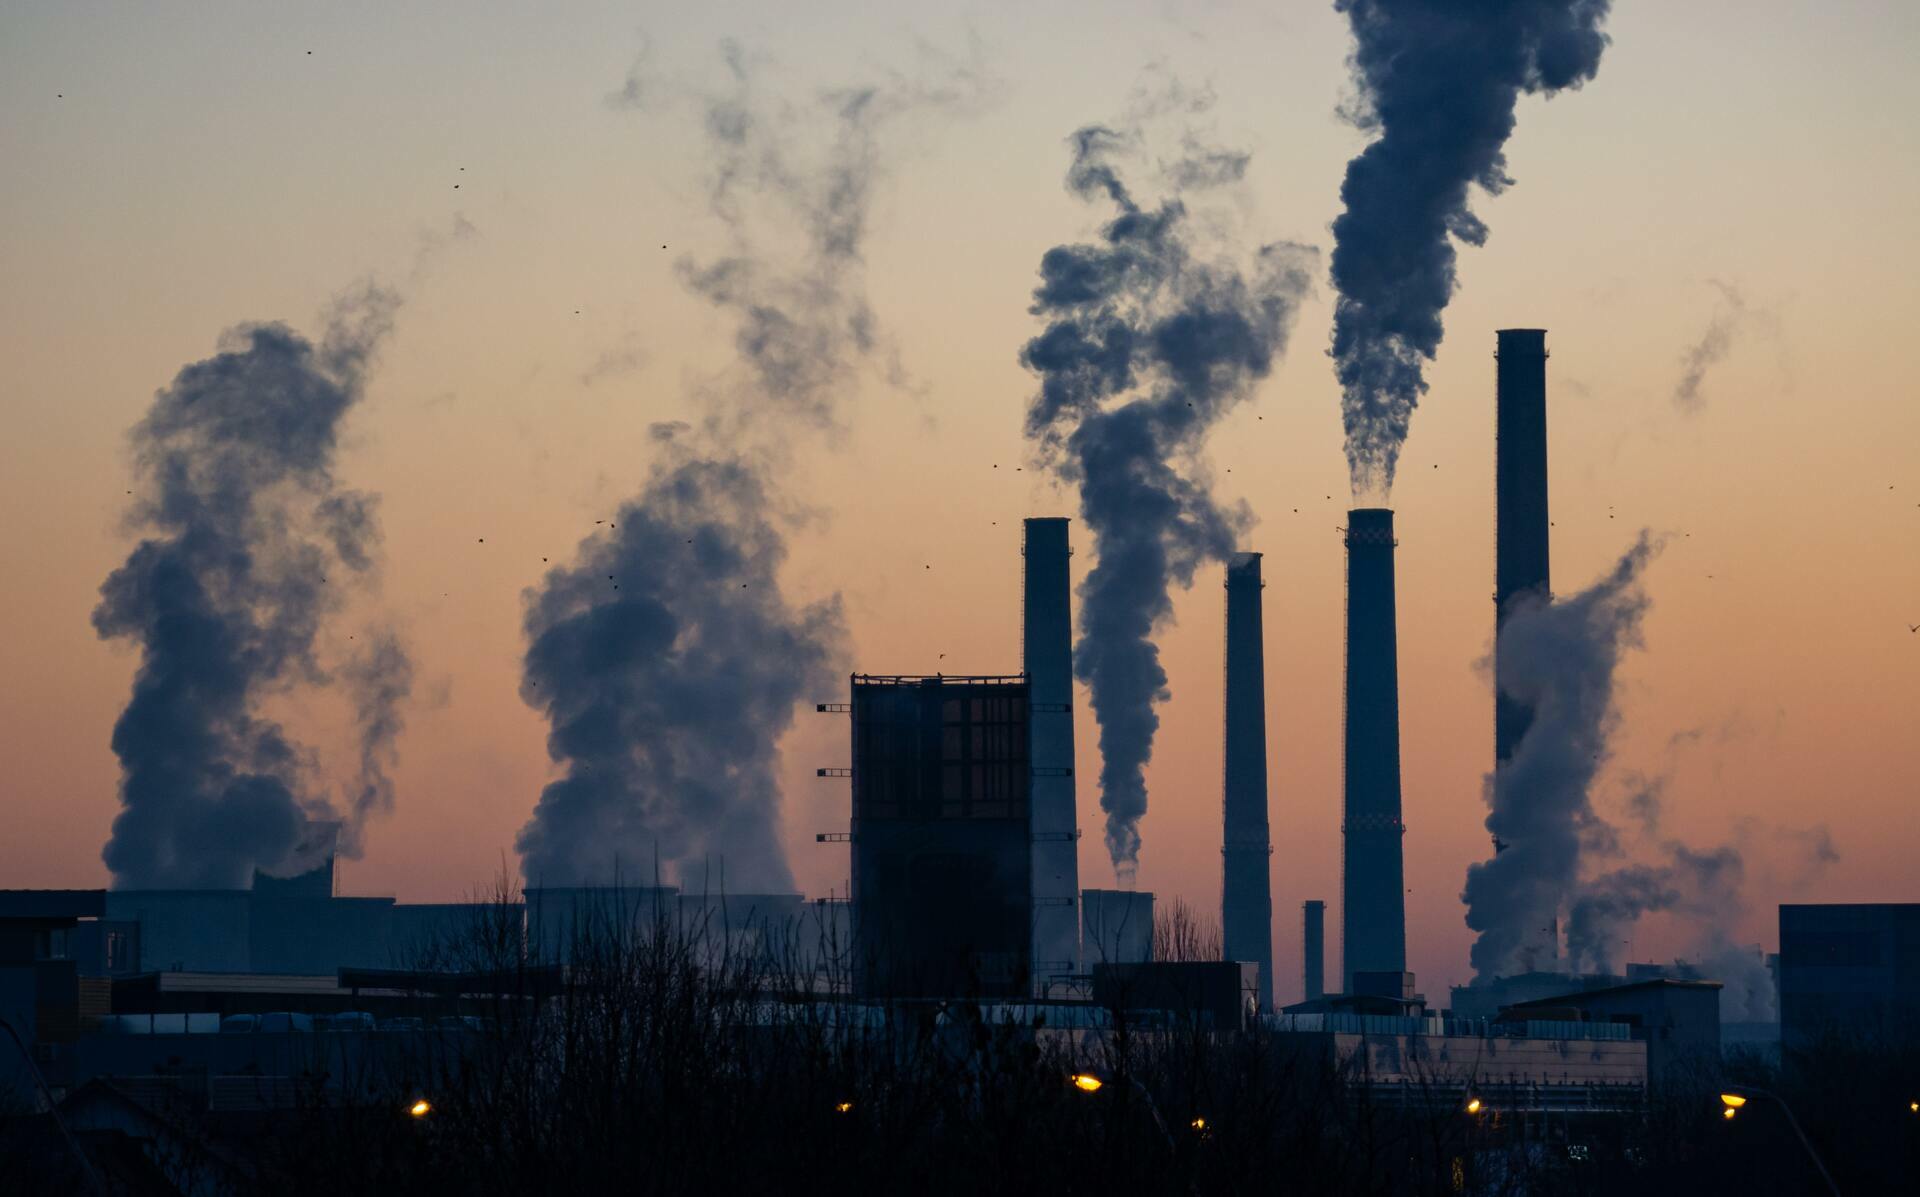 Documentos internos revelados en 2015 sugerían que los científicos de ExxonMobil informaron a los ejecutivos de la empresa sobre el peligroso calentamiento climático provocado por los humanos desde al menos 1977.